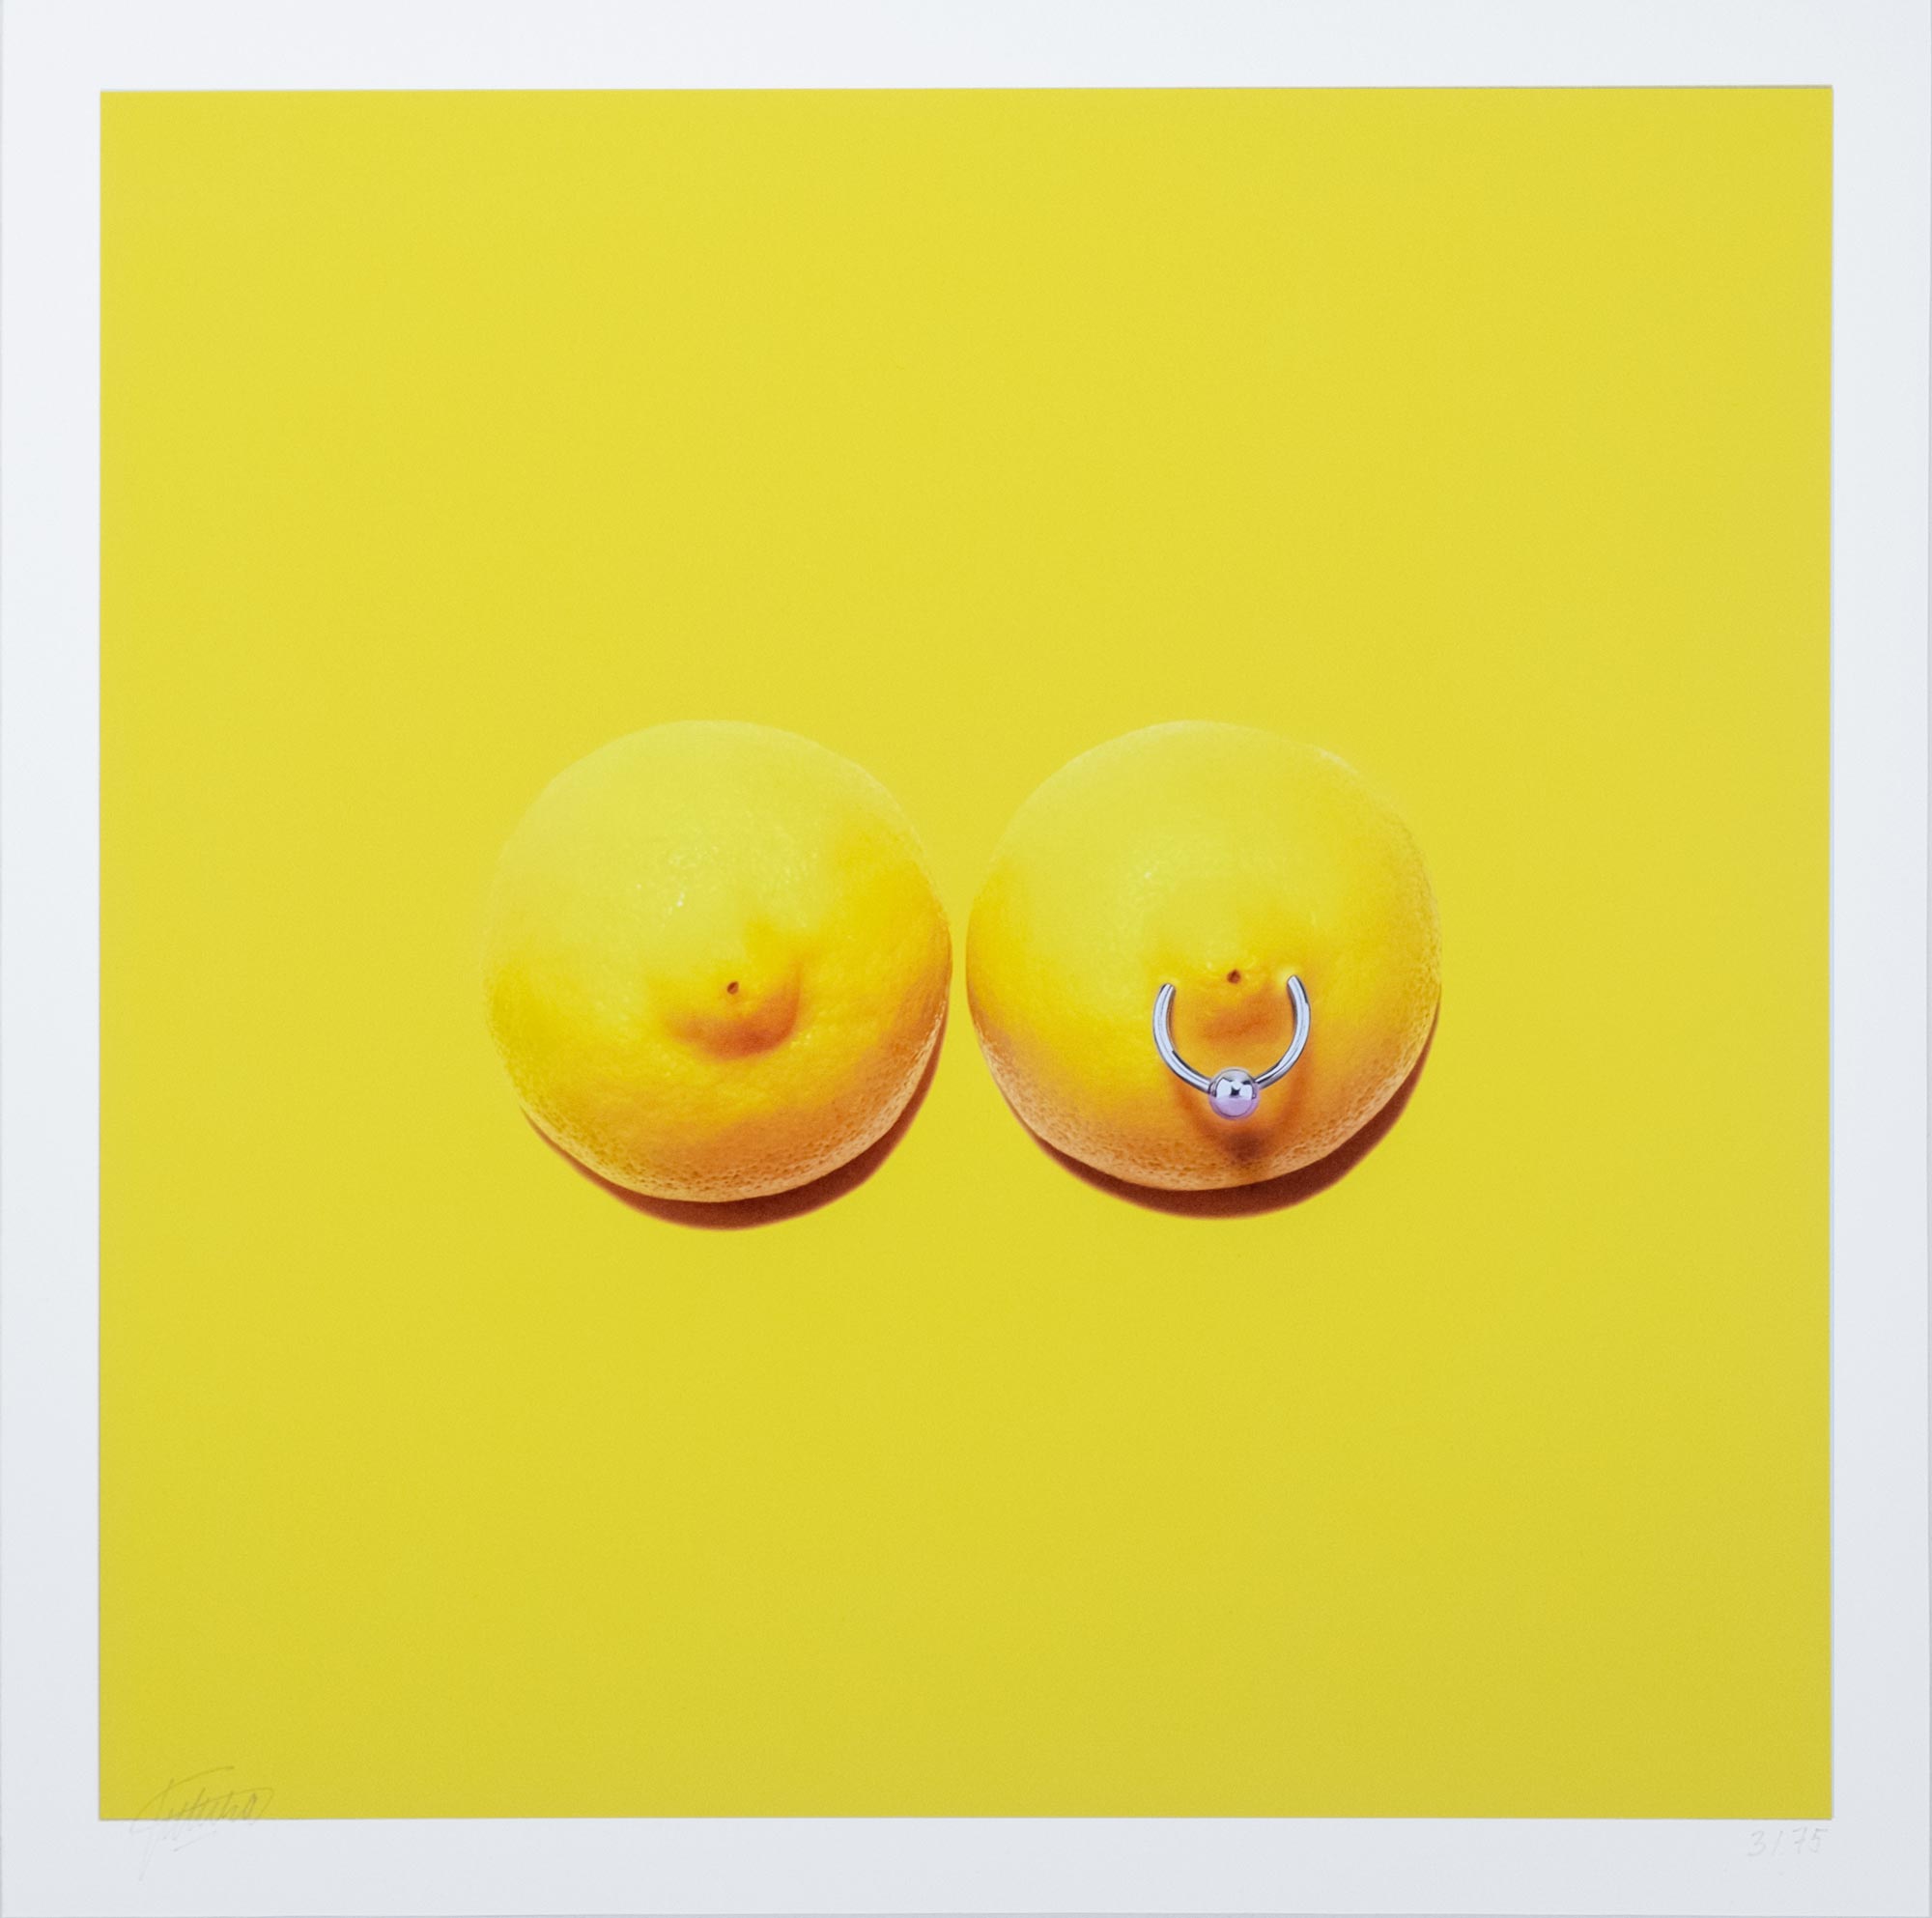 Tony Futura - Lemons